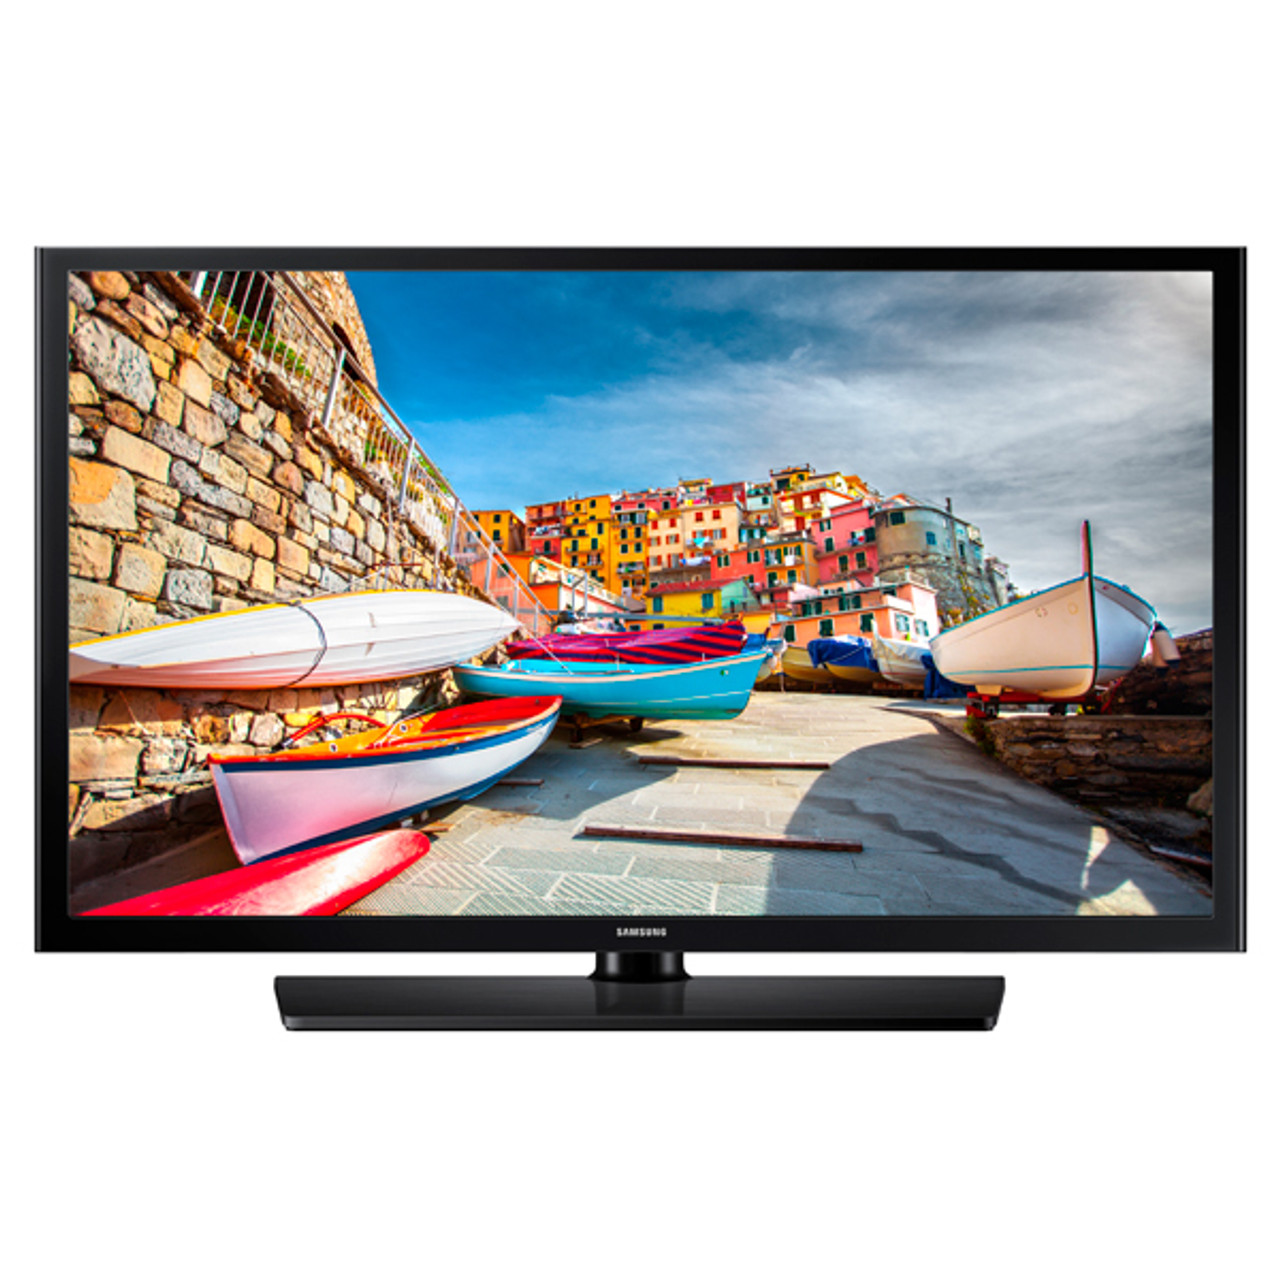 Samsung HG43NE470SF 43" Full HD Black LED TV